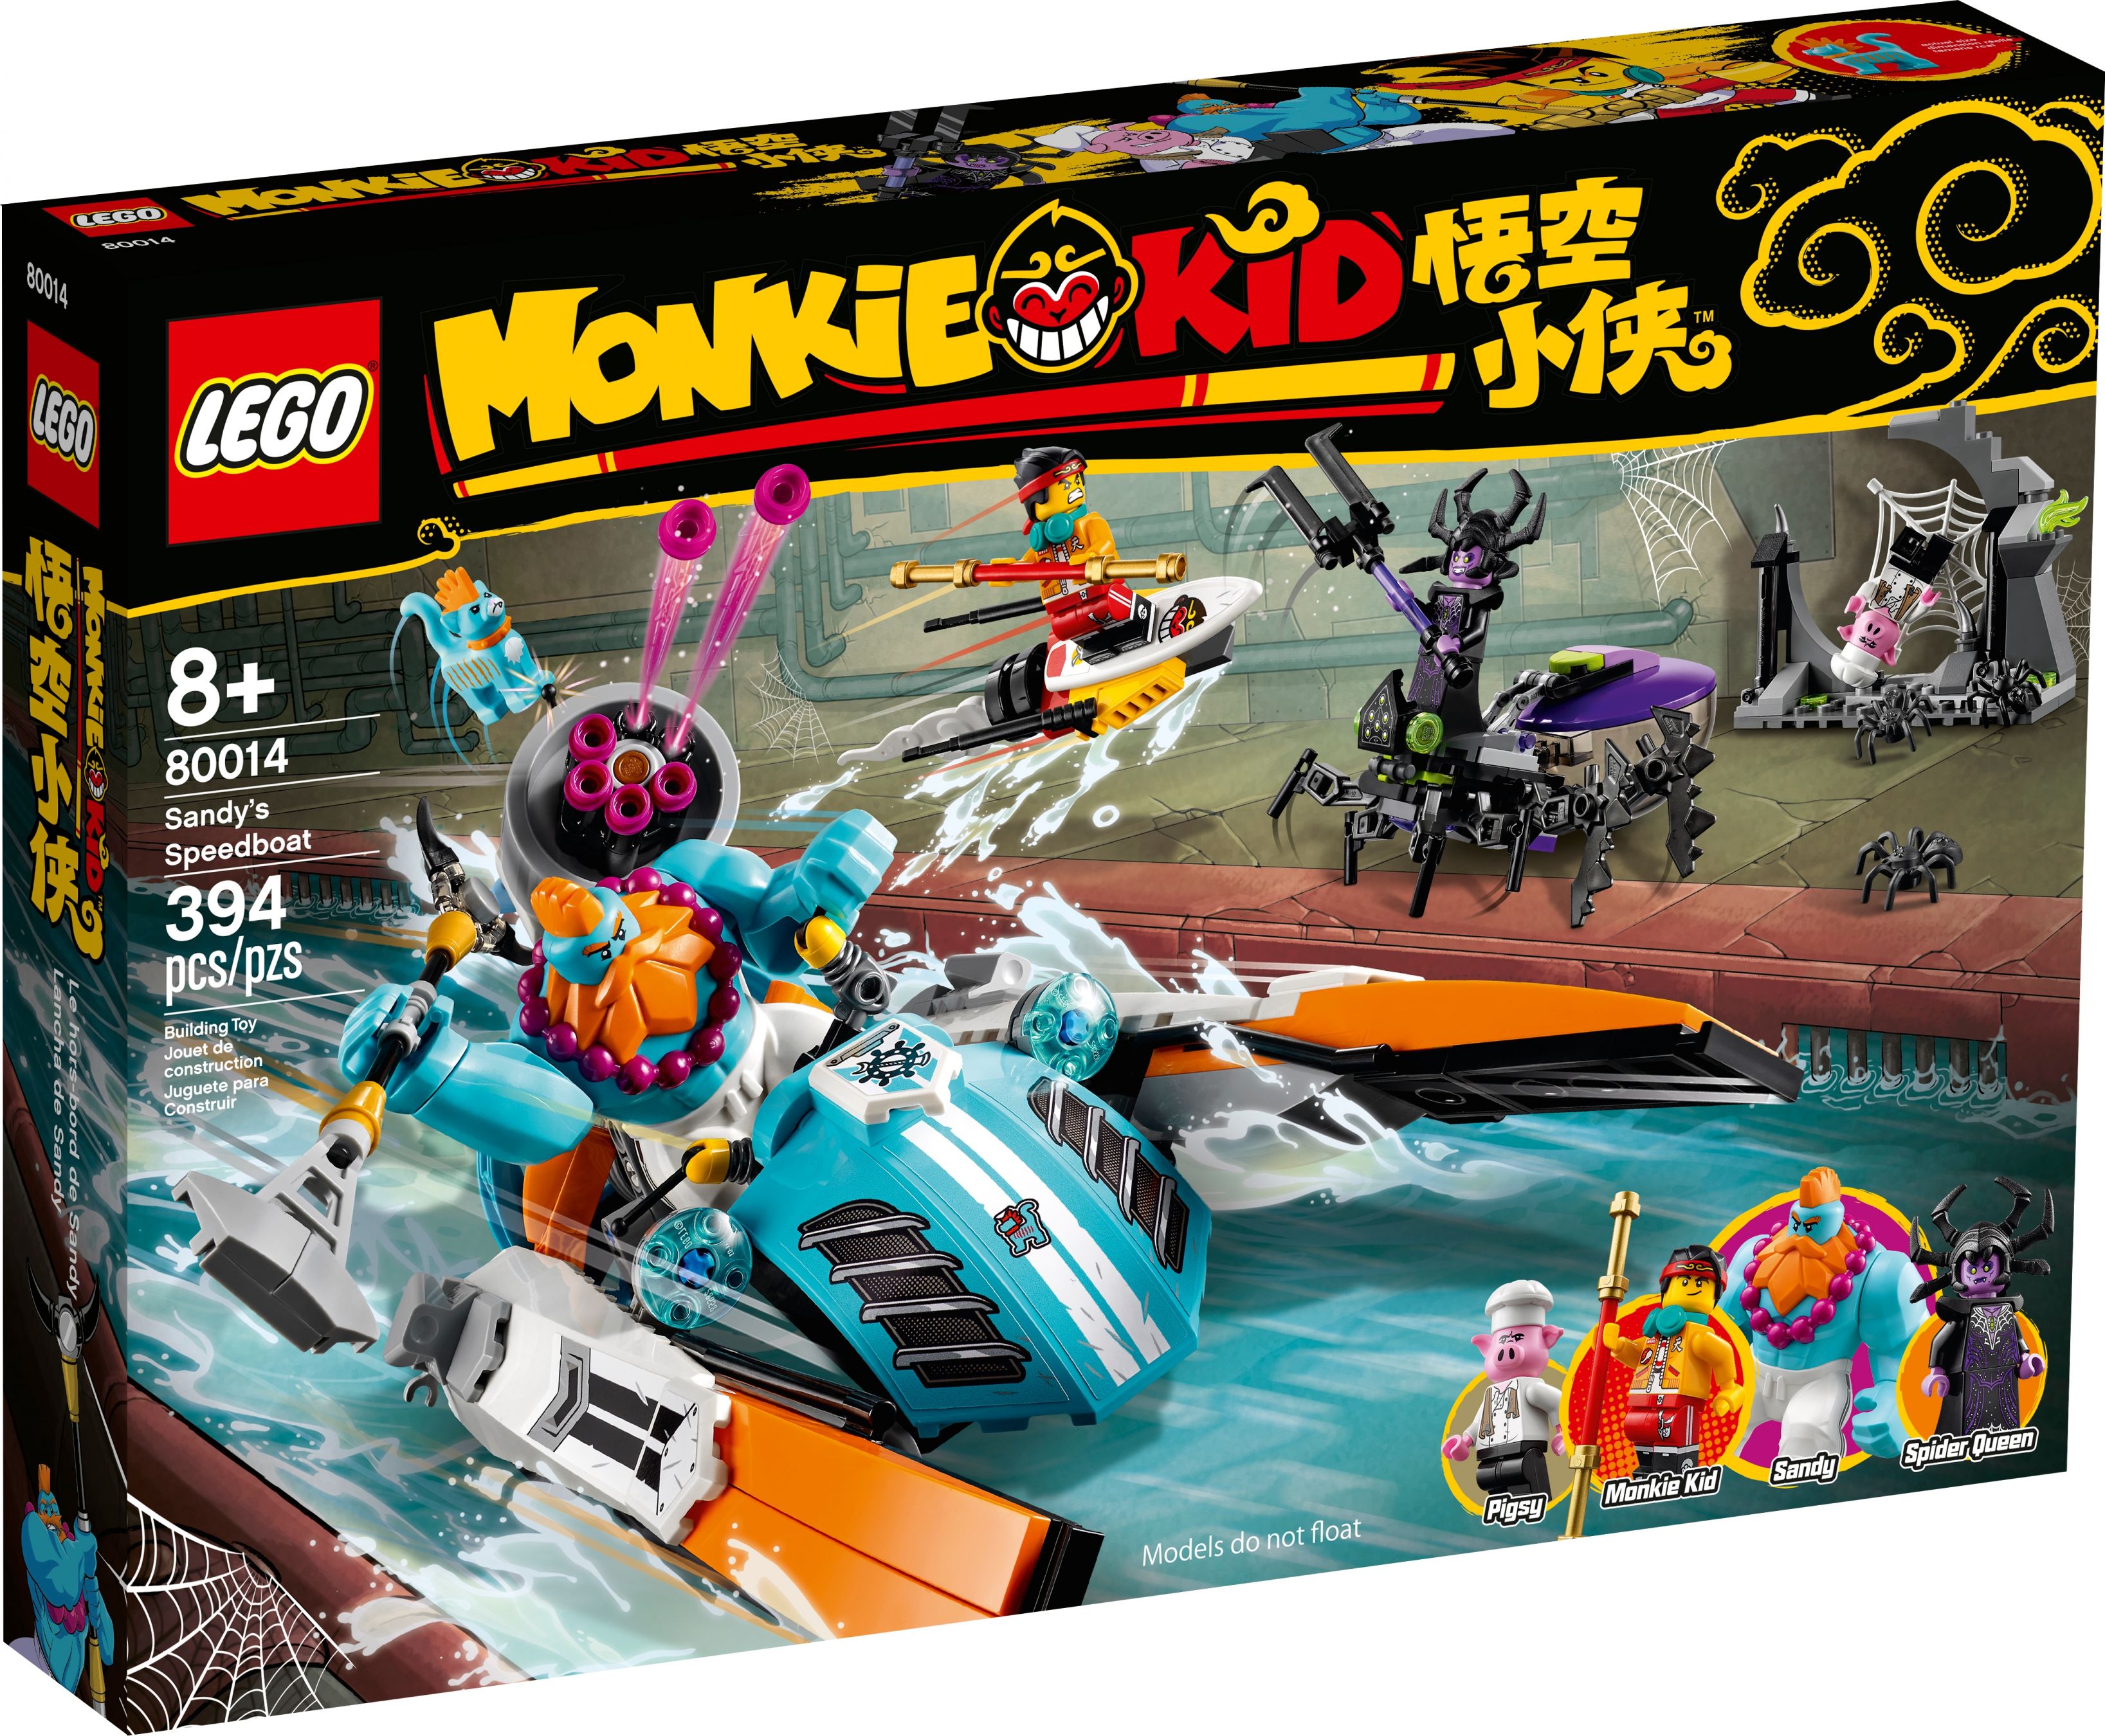 LEGO Monkie Kid 80014 Sandys Schnellboot LEGO_80014_alt1.jpg